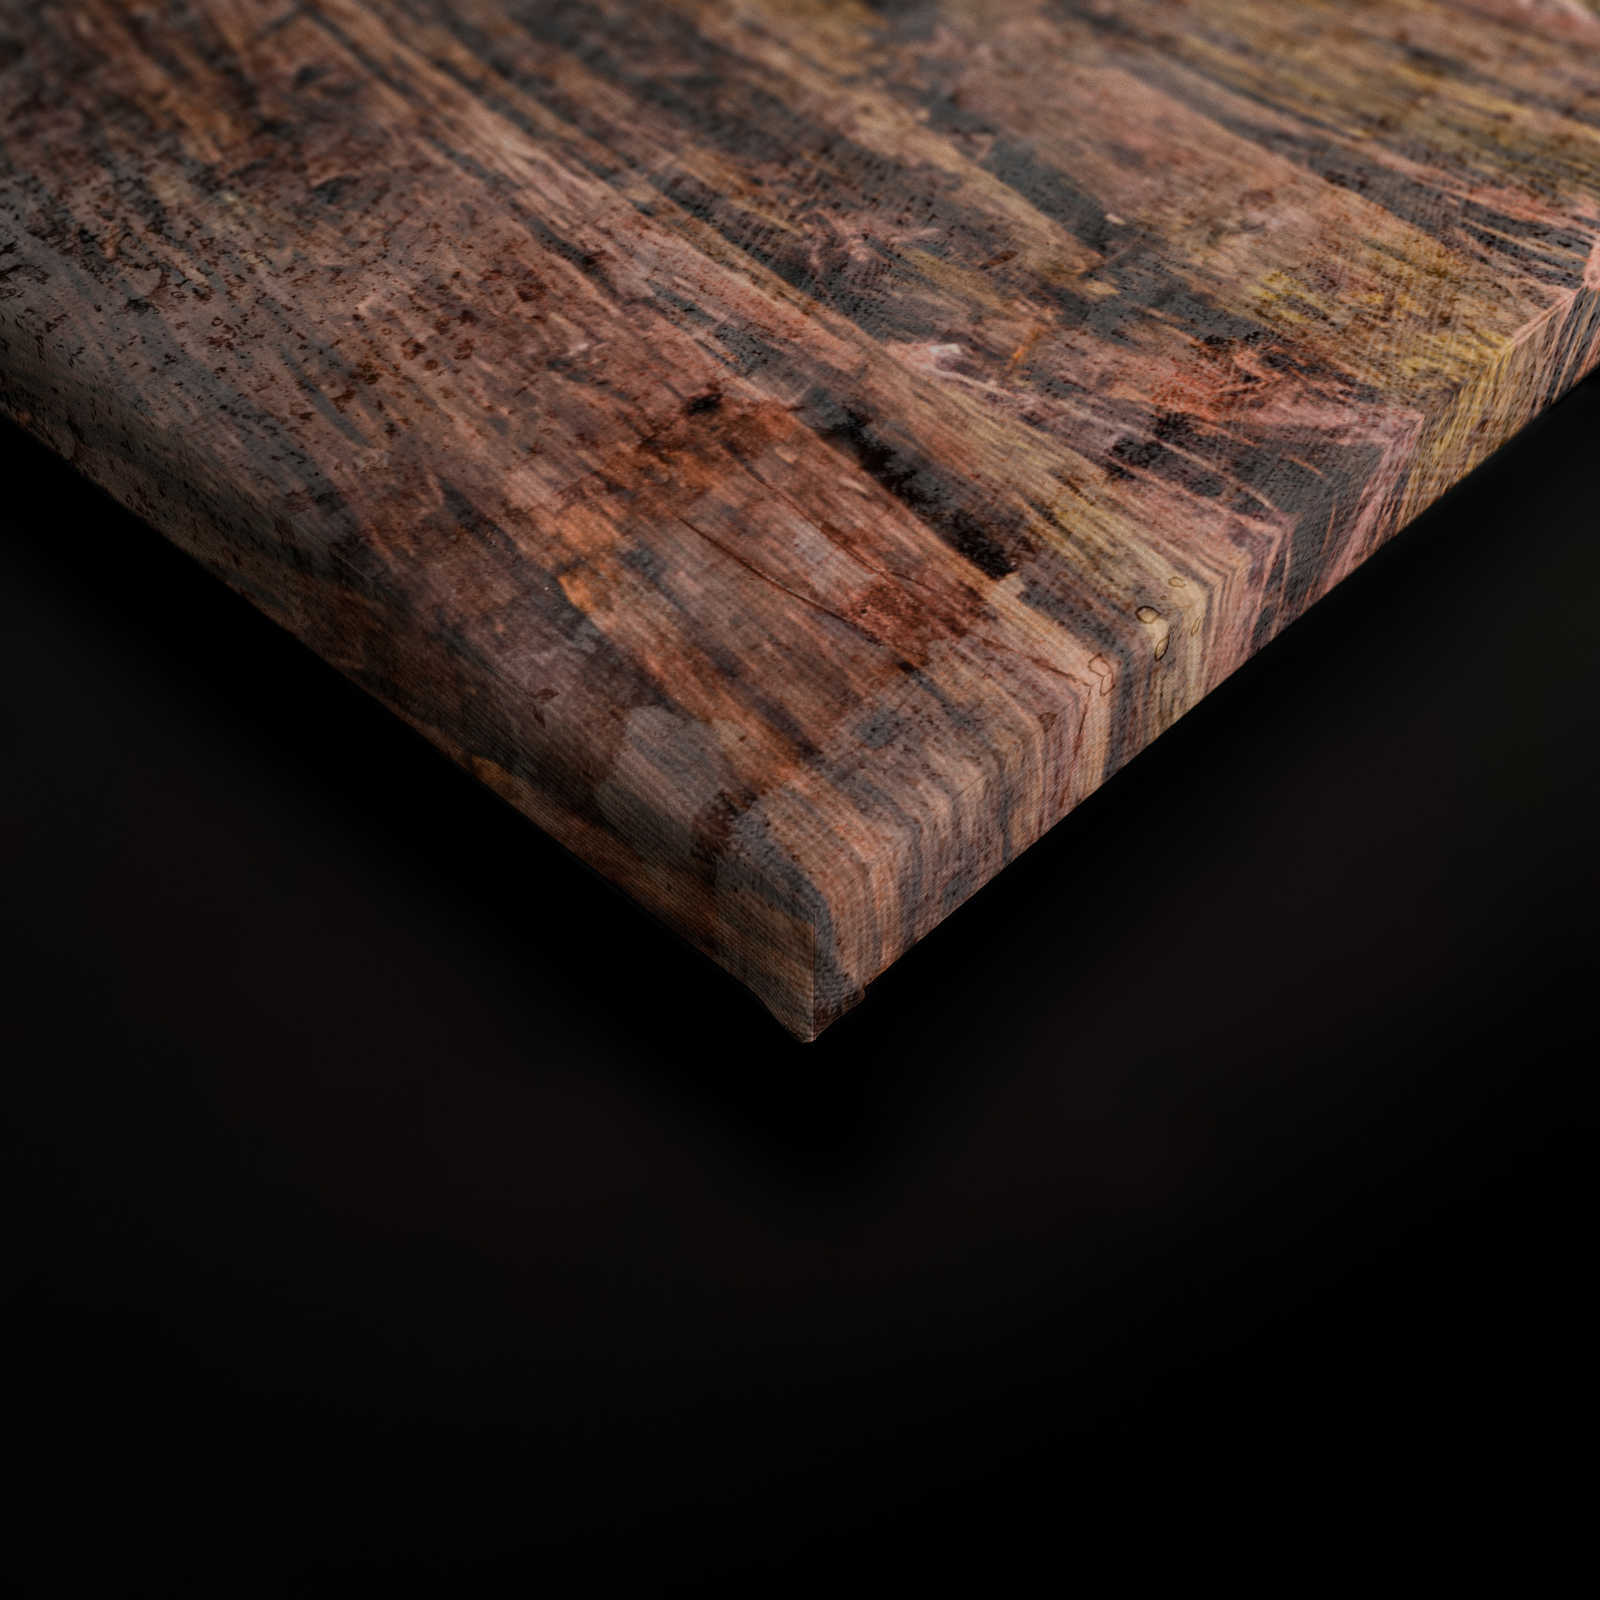             Lienzo con escalera de madera por el bosque | marrón, verde, azul - 0,90 m x 0,60 m
        